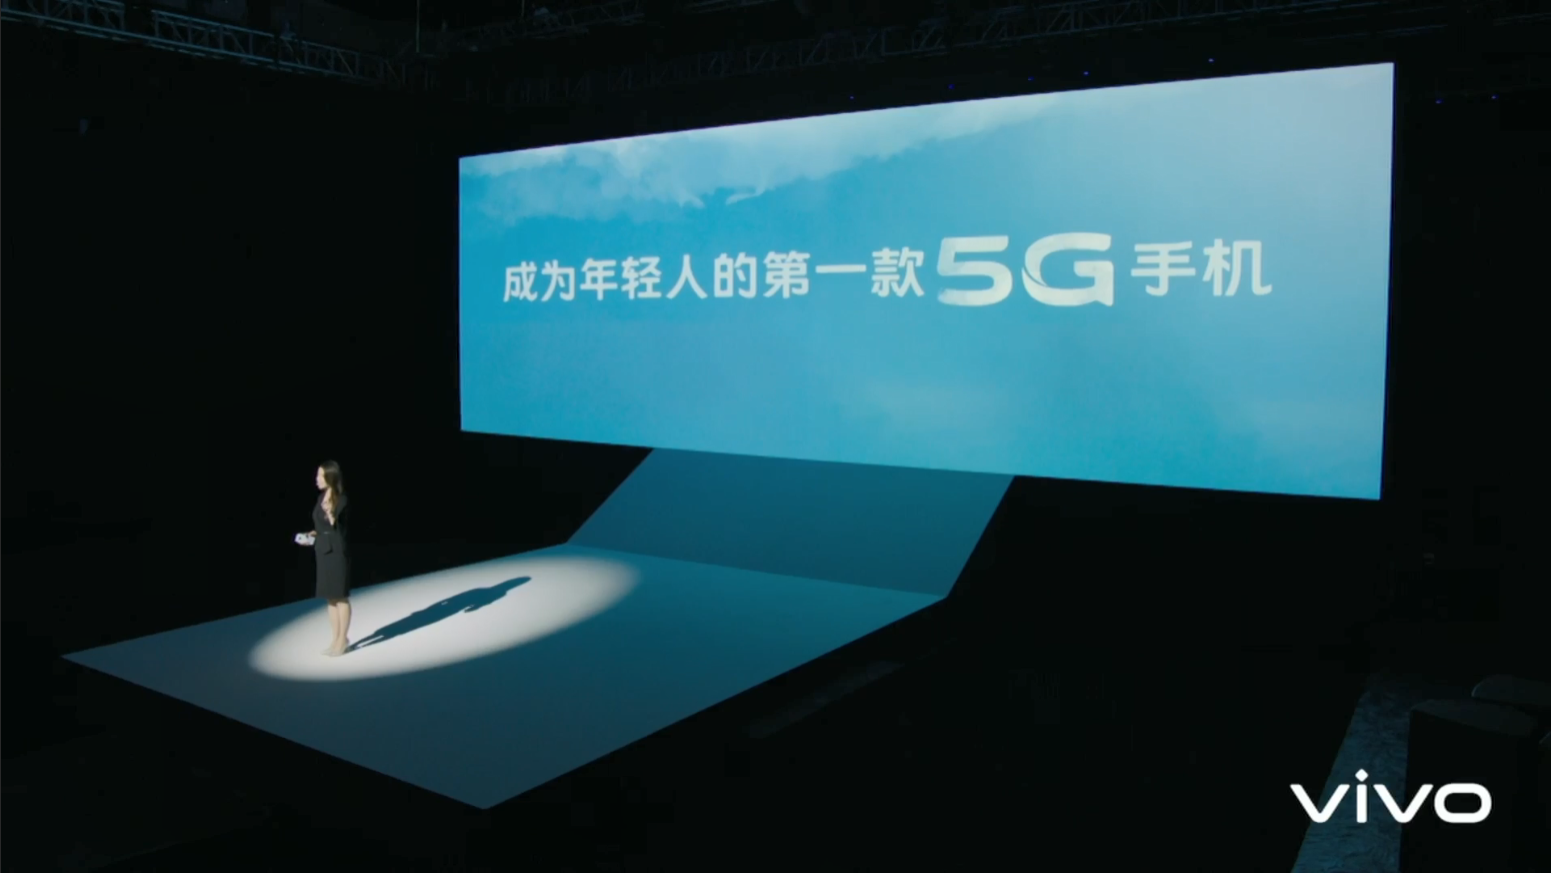 东莞Vivo总部5G网络带来的高效便捷体验和深远影响  第7张